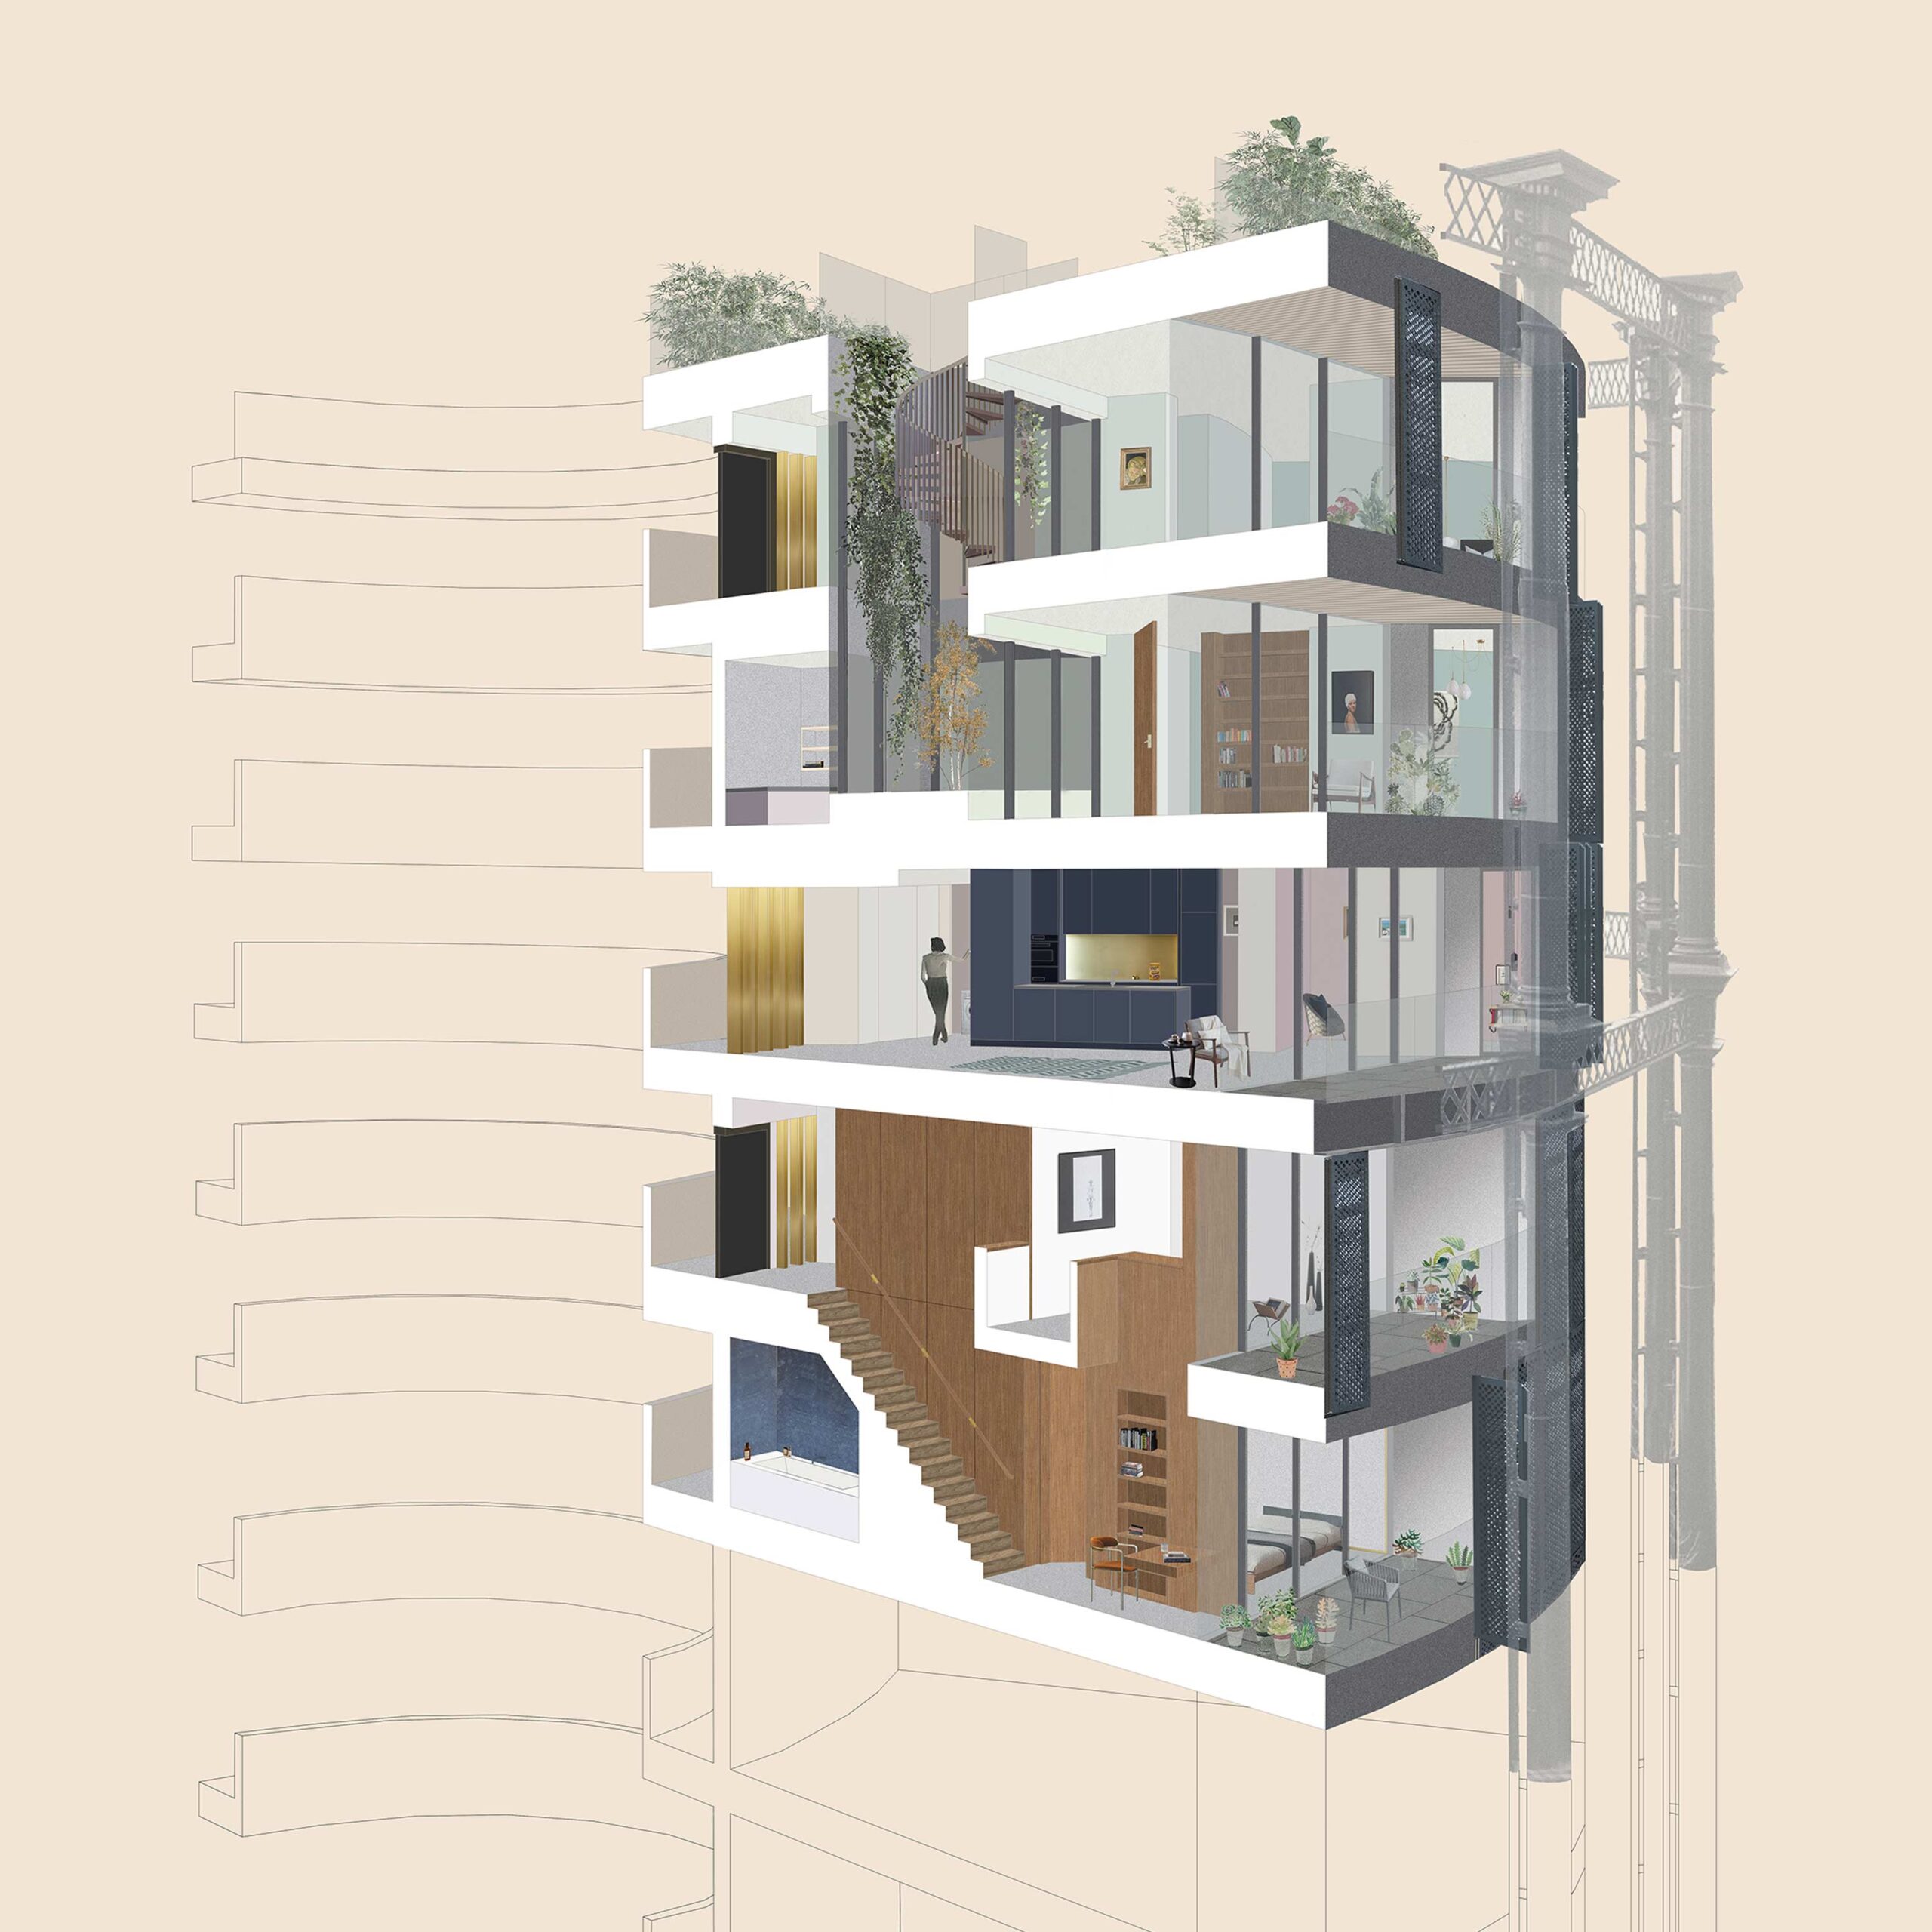 Illustration en coupe montrant la division des appartements d'un et de deux étages.